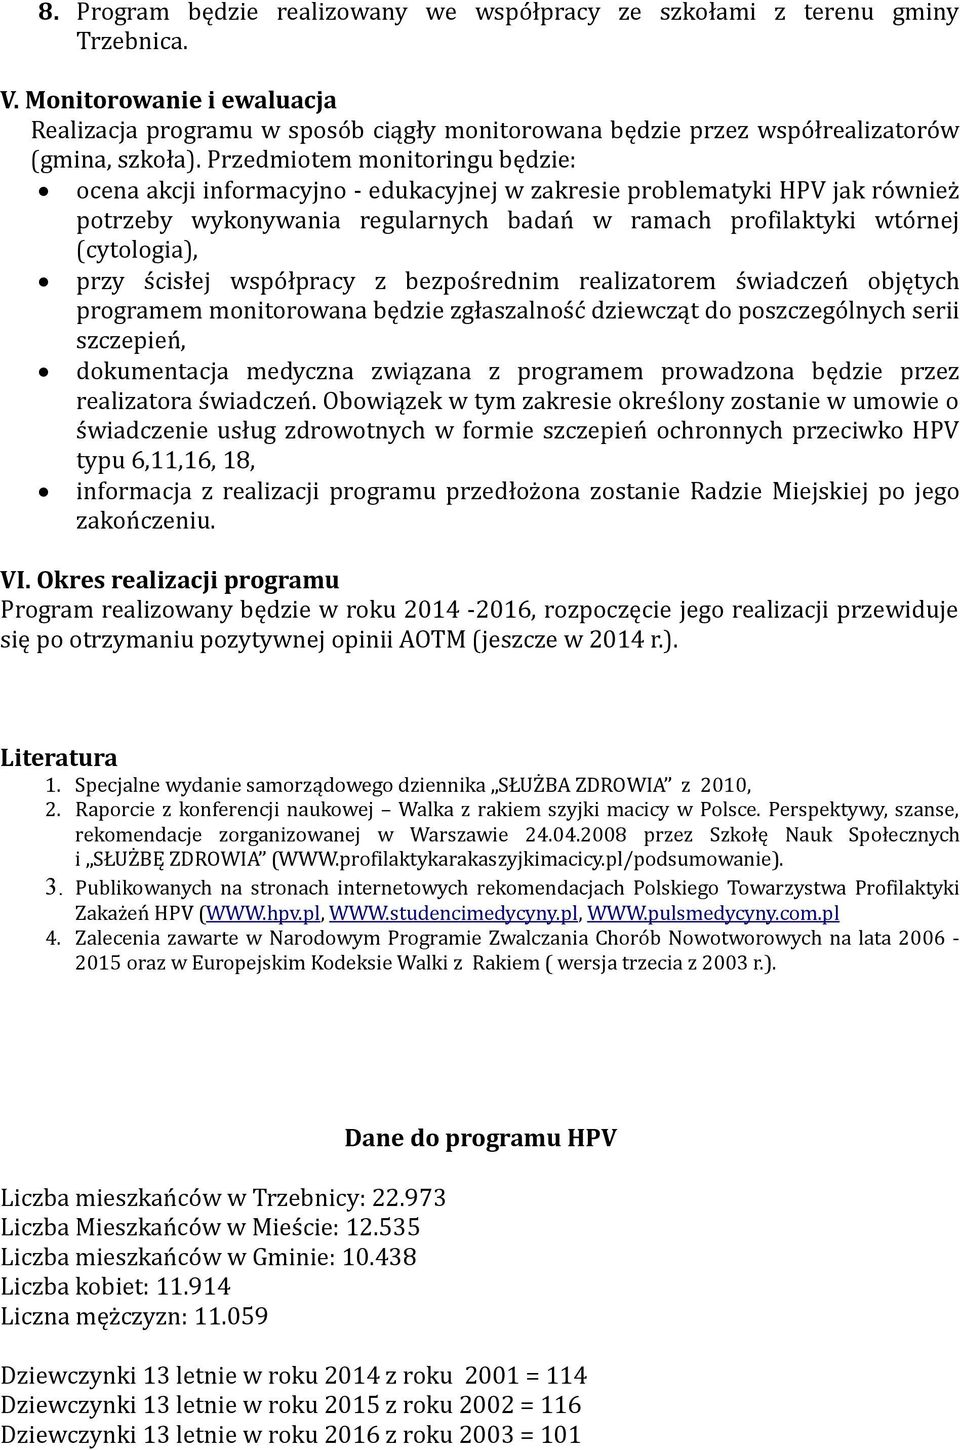 Przedmiotem monitoringu będzie: ocena akcji informacyjno - edukacyjnej w zakresie problematyki HPV jak również potrzeby wykonywania regularnych badań w ramach profilaktyki wtórnej (cytologia), przy